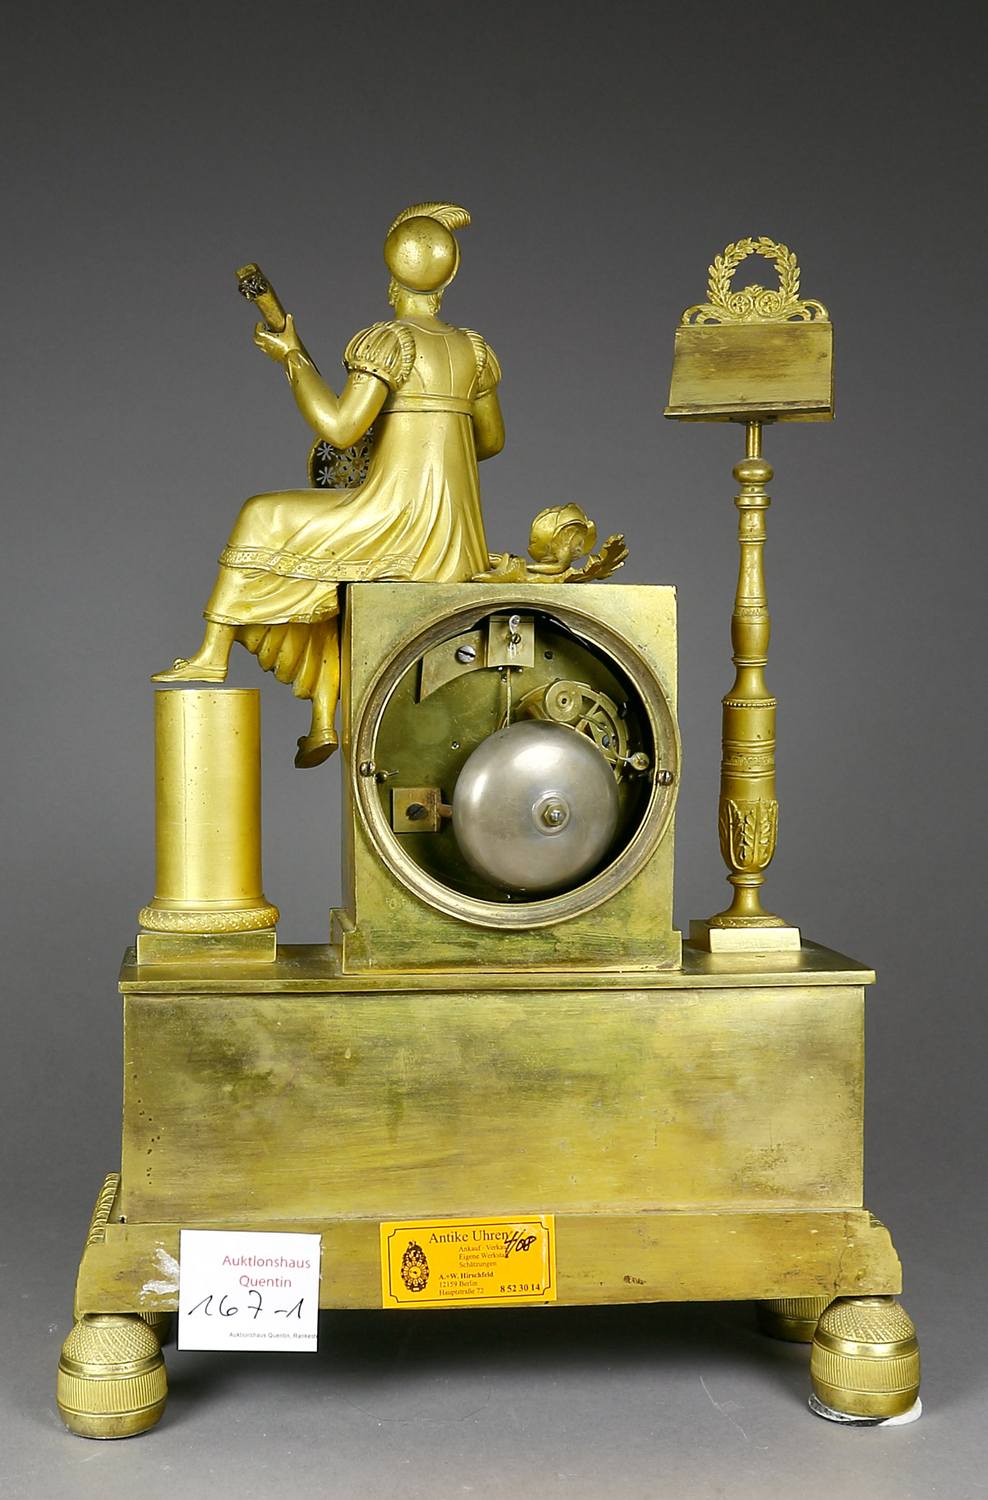 Auktionshaus Quentin Berlin   Uhr  Kaminuhr  Empire  Frankreich  um 1820